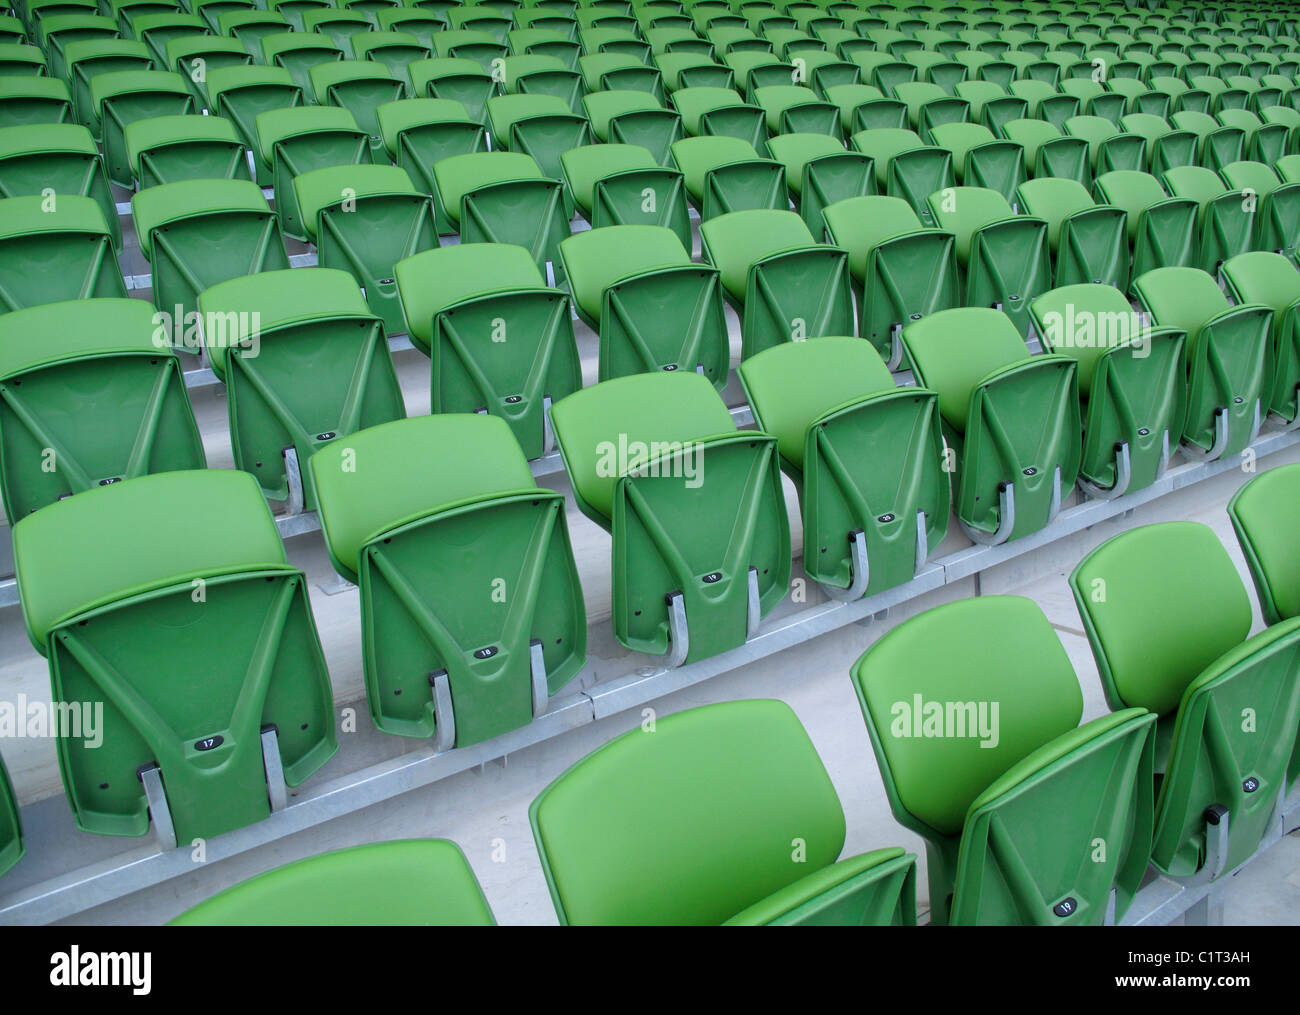 Stadium seating Stock Photo